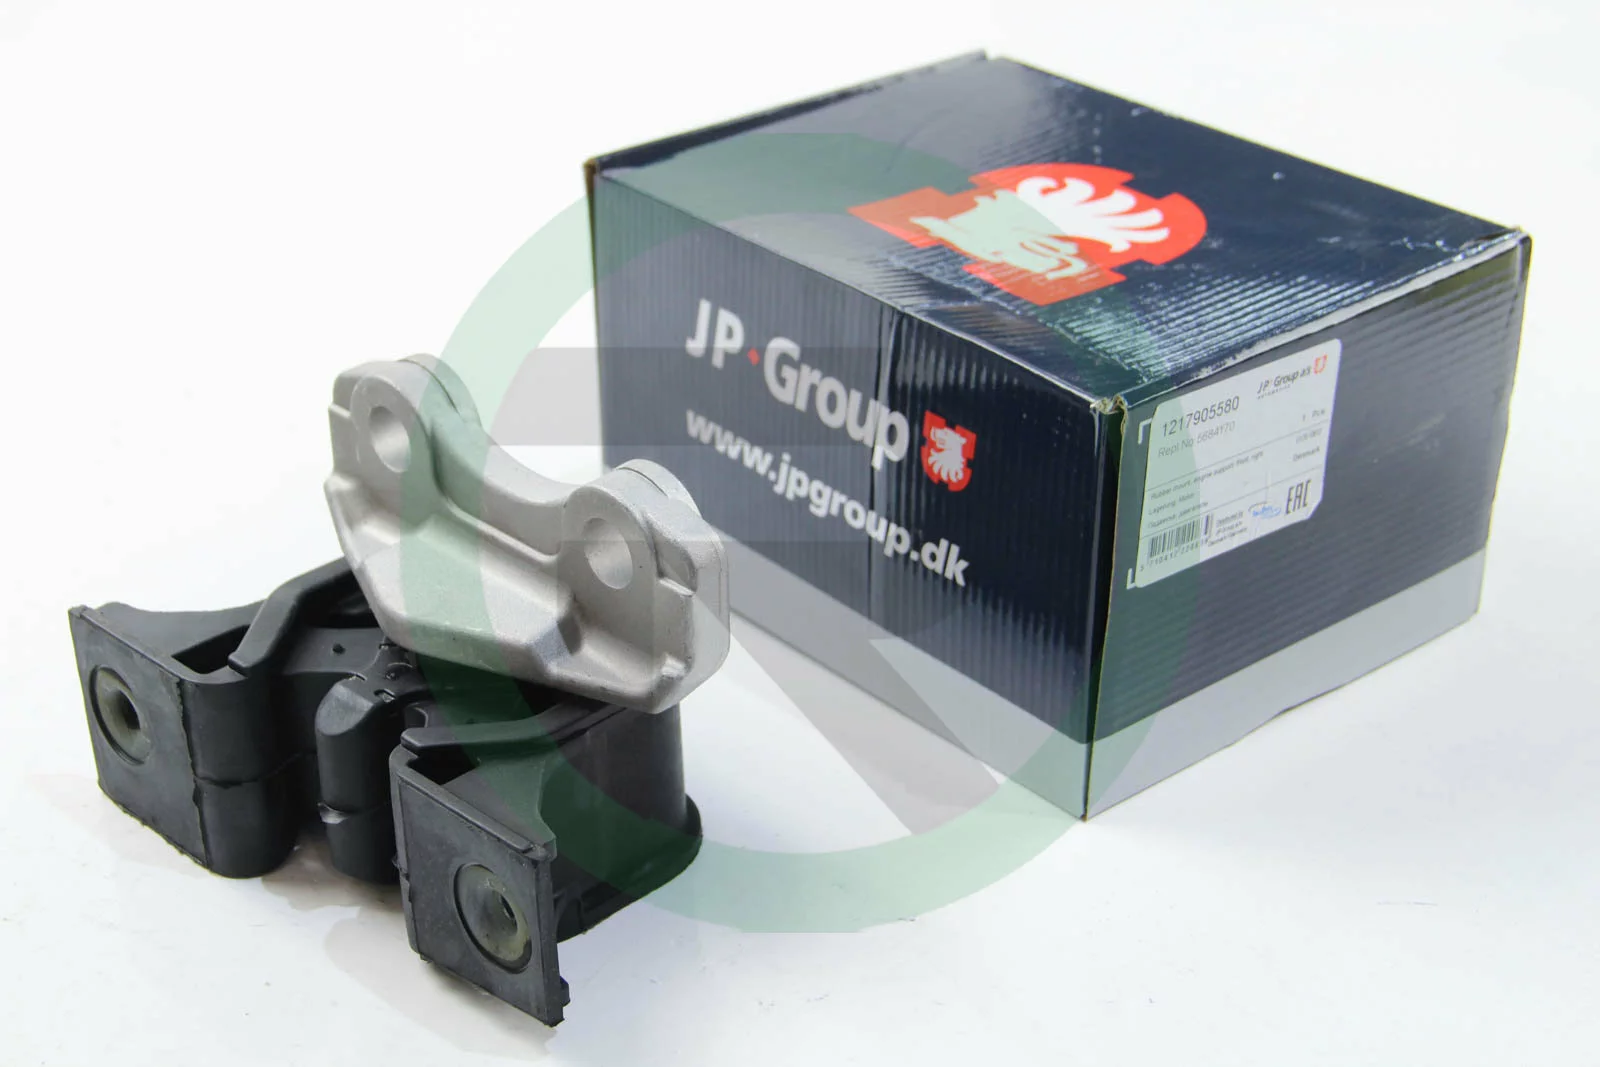 Передня права подушка двигуна JP Group 1217905580.